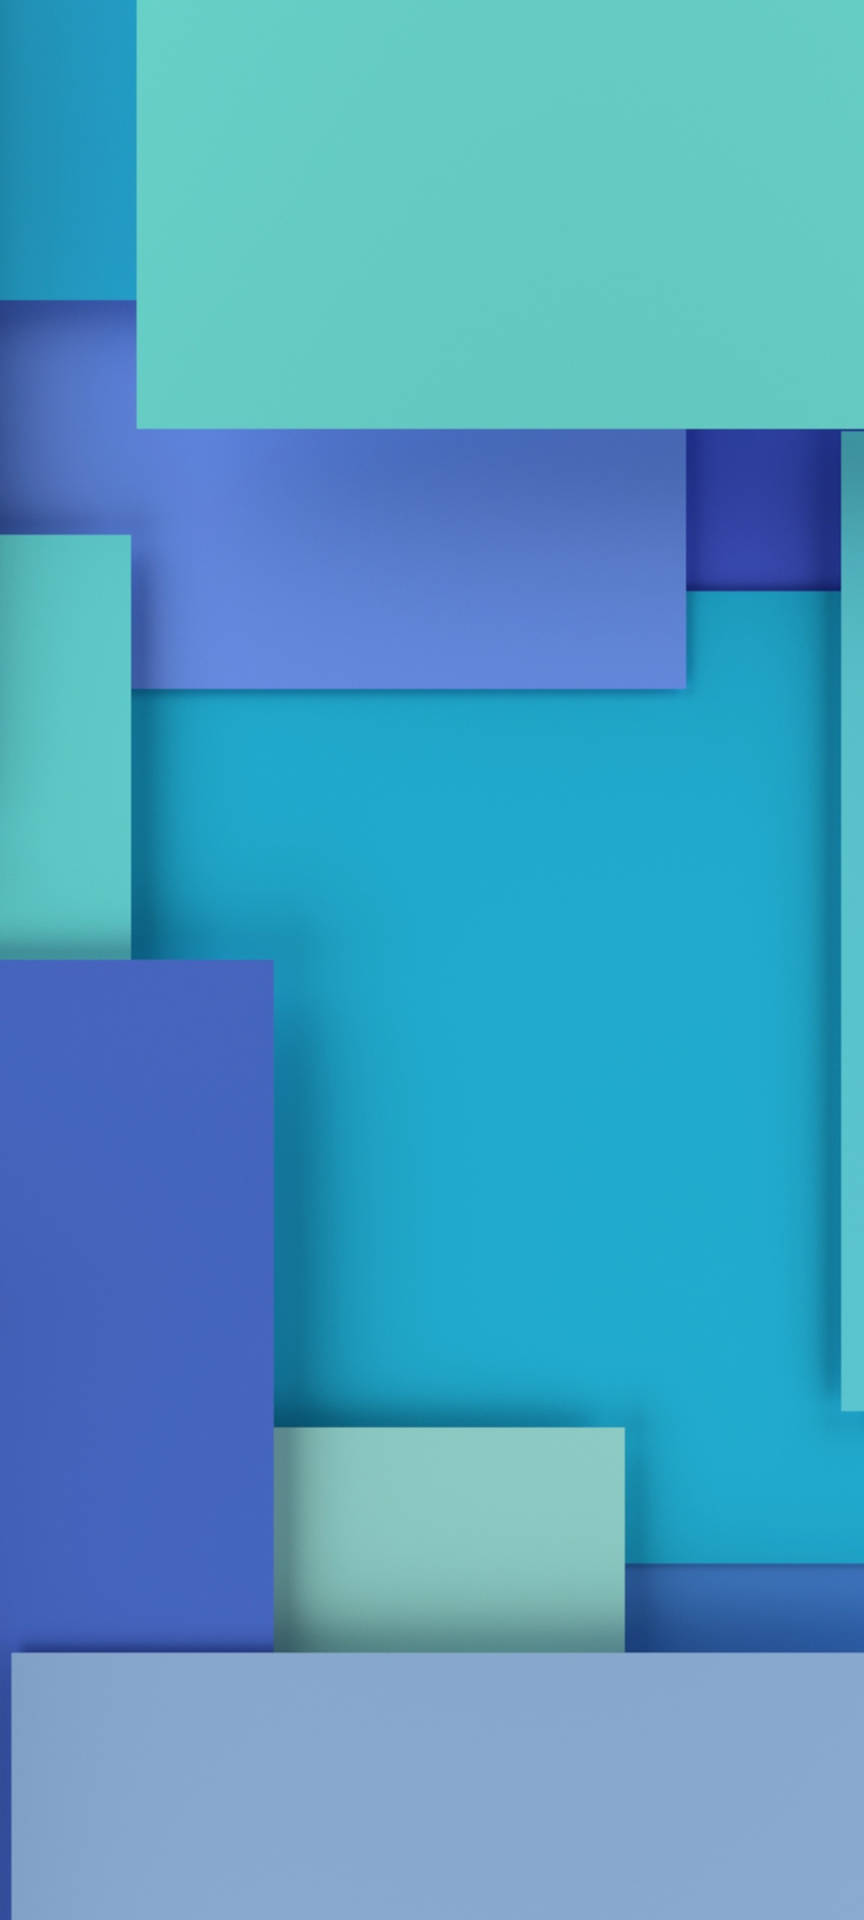 Cyan Turquoise Indigo Squares Background